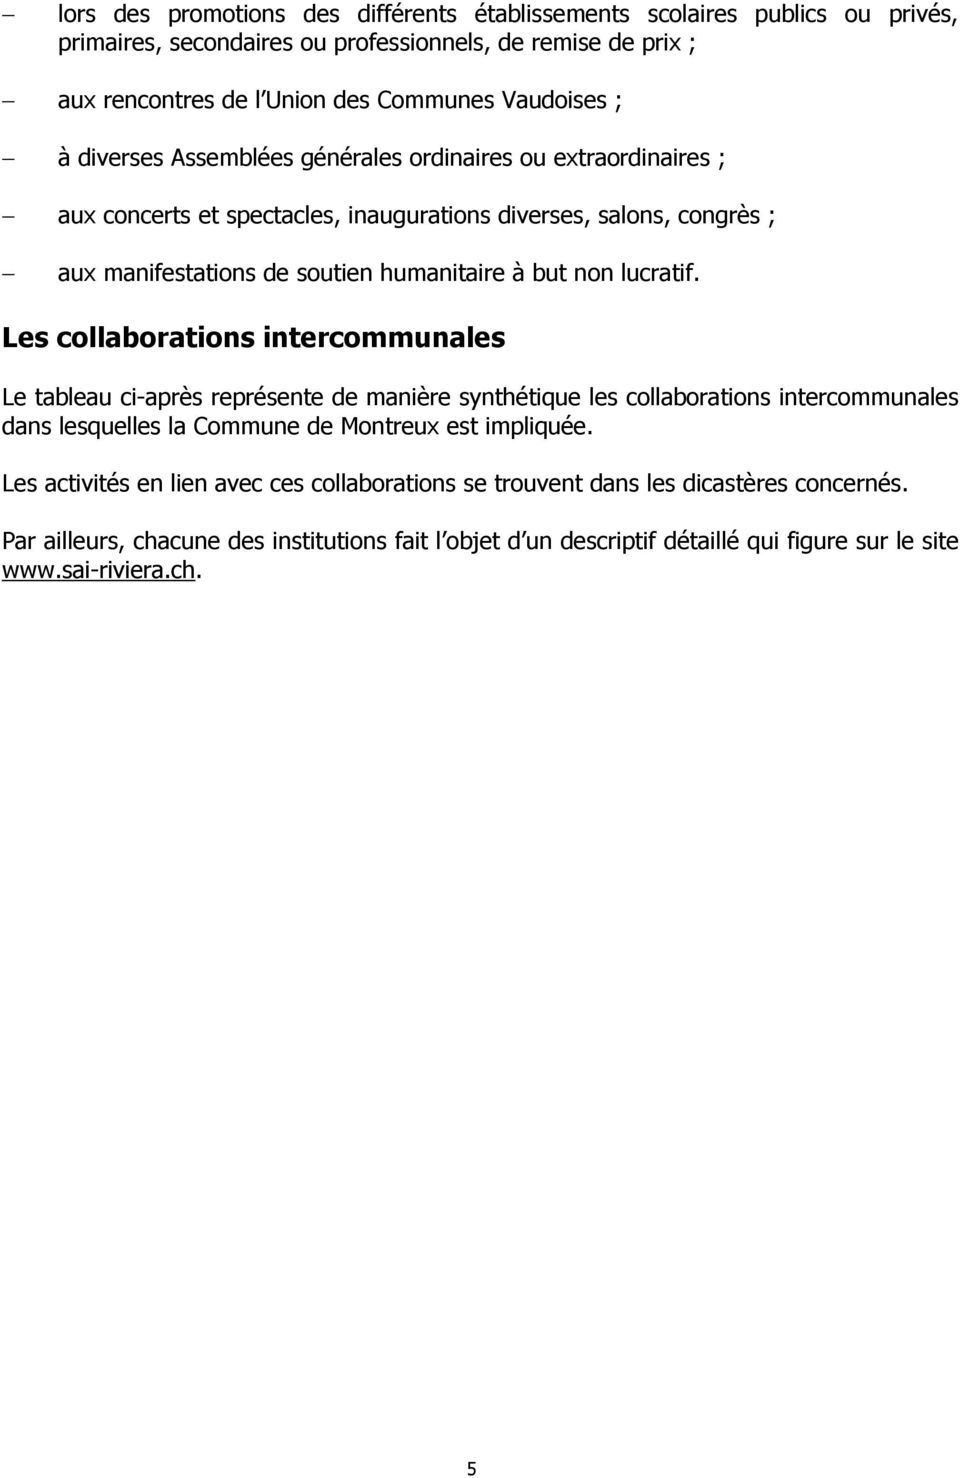 Les collaborations intercommunales Le tableau ci-après représente de manière synthétique les collaborations intercommunales dans lesquelles la Commune de Montreux est impliquée.